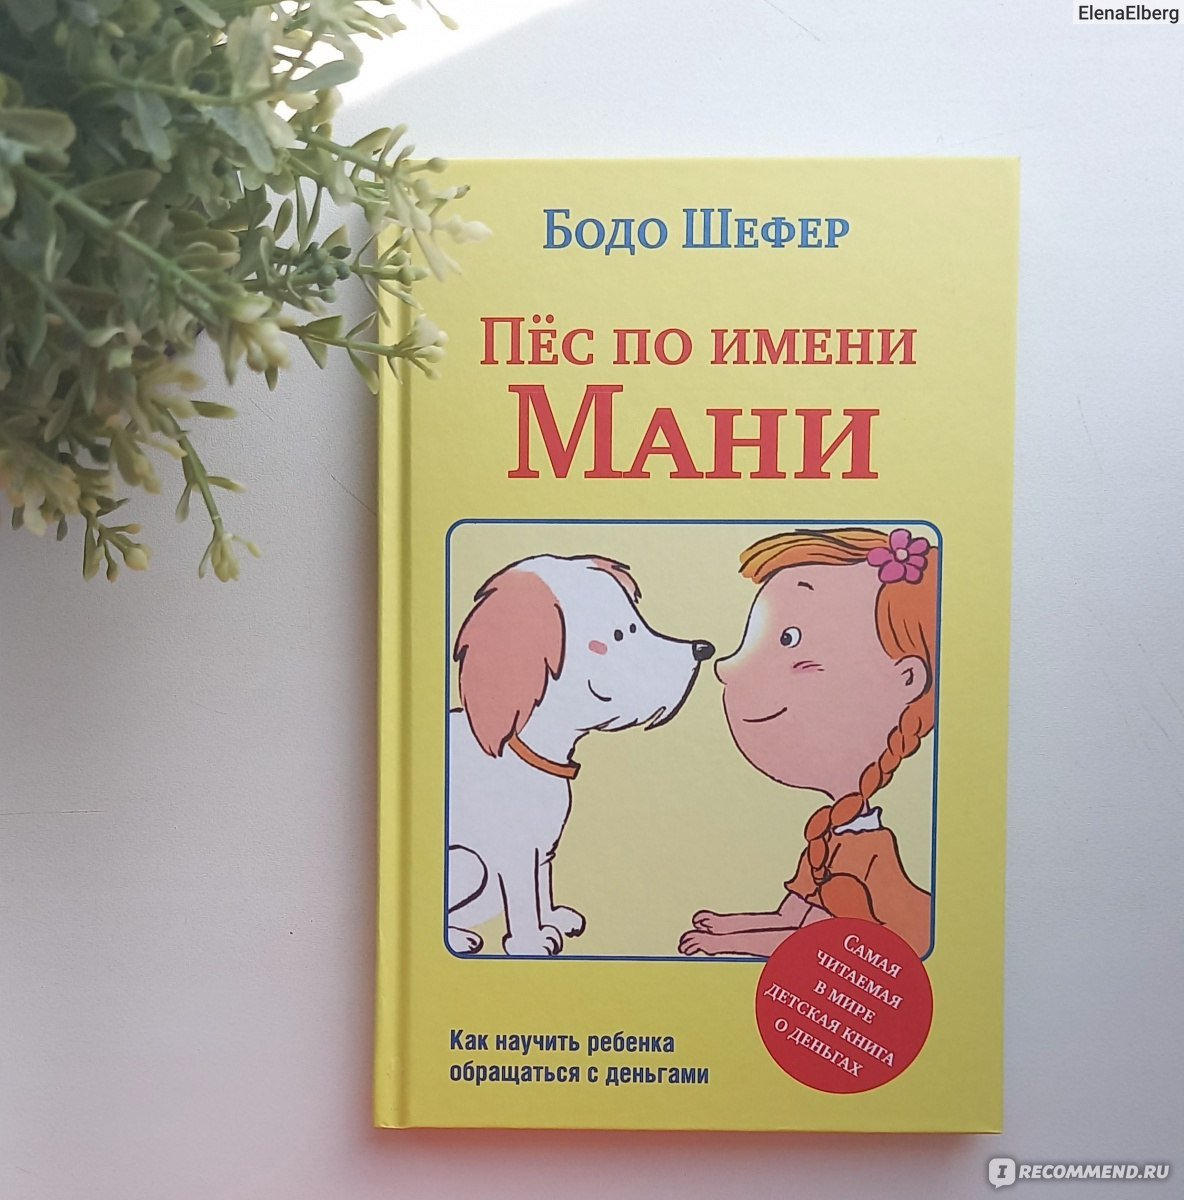 Книга про мани. Бодо Шефер собака мани. Шефер Бодо "пёс по имени мани". Пёс мани книга. Пёс по имени мани Бодо Шефер книга.